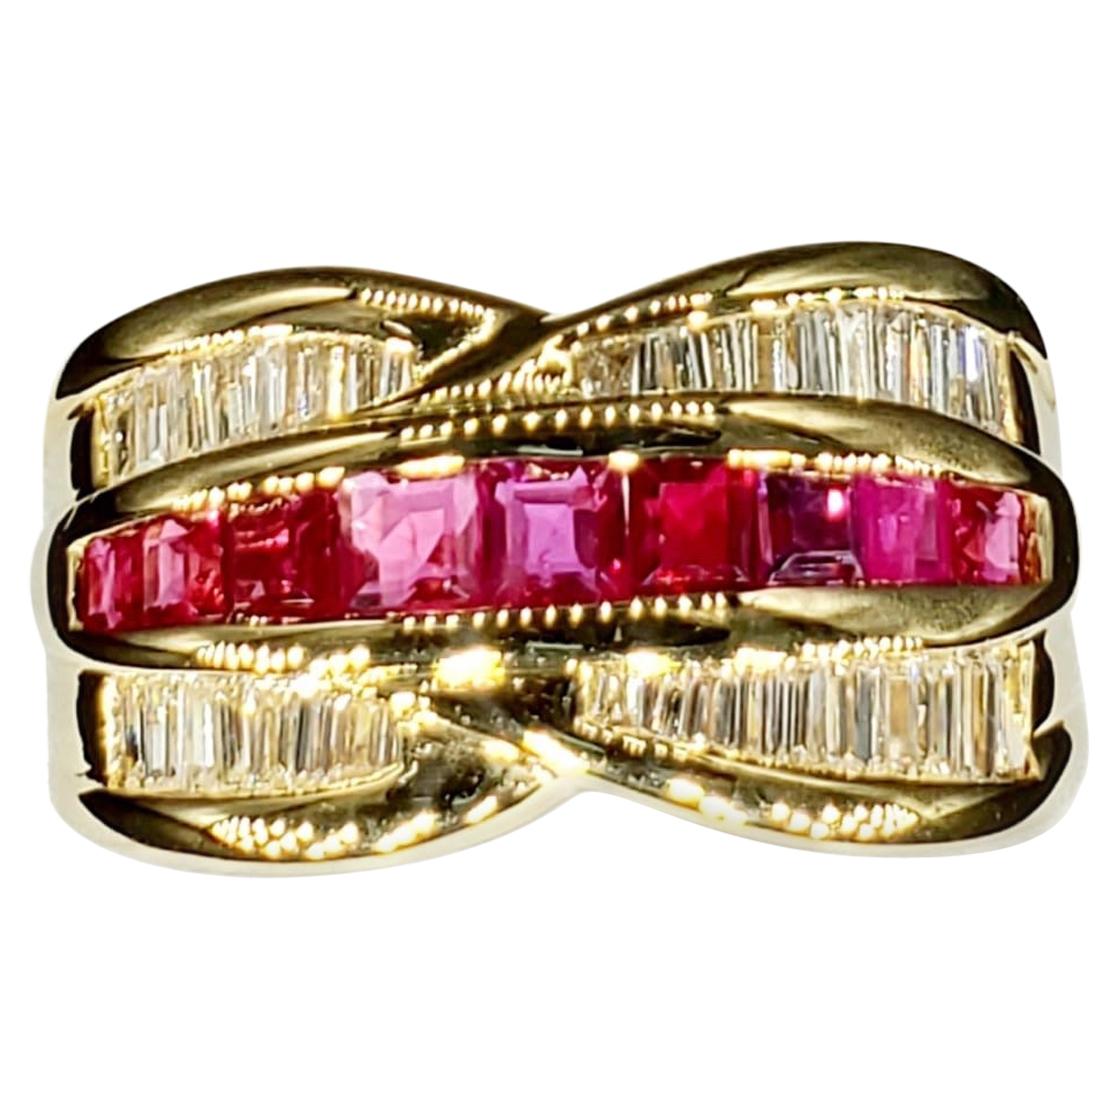 Vintage 2 Carat Diamonds and Ruby Ring 18 Karat Gold